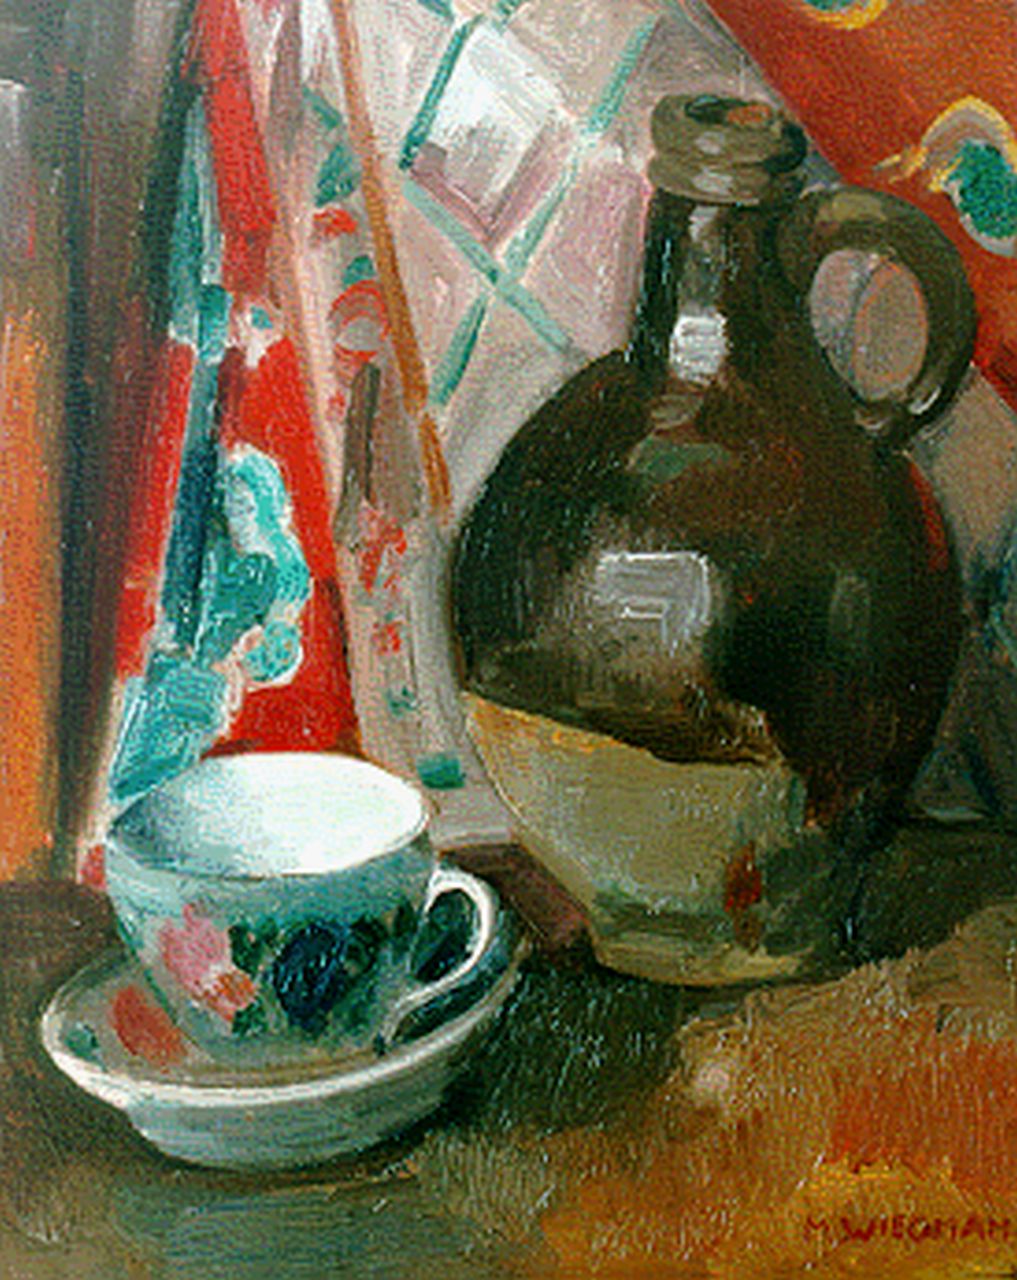 Wiegman M.J.M.  | Mattheus Johannes Marie 'Matthieu' Wiegman, A still life with a jug, Öl auf Leinwand 44,3 x 36,0 cm, signed l.r.